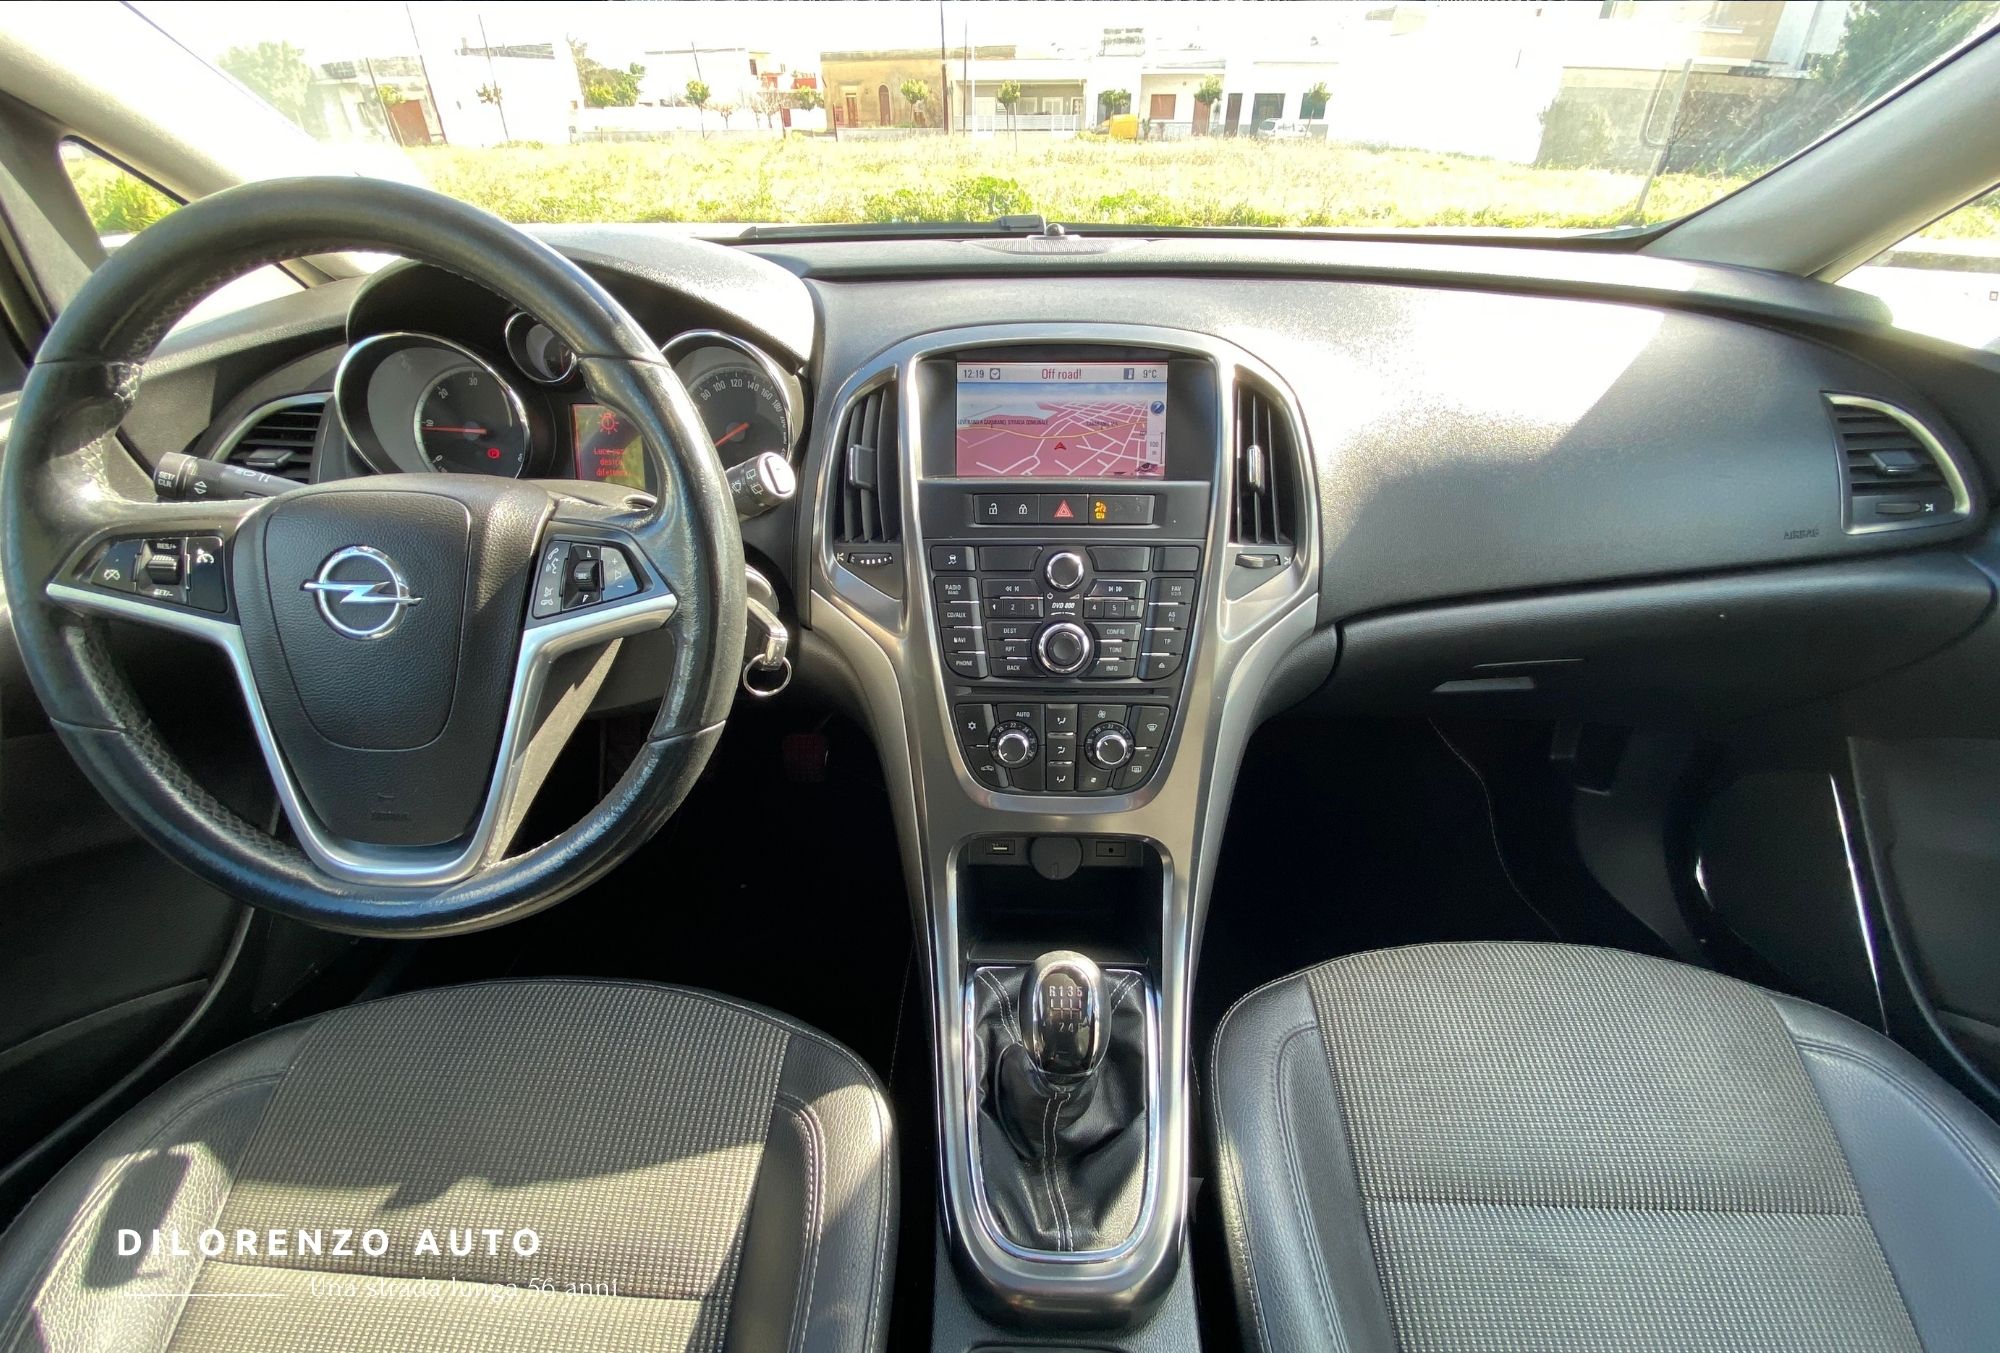 Opel Astra 1.7 CDTI 110CV 5 porte - 6.800 - Di Lorenzo Auto Leverano (Le)